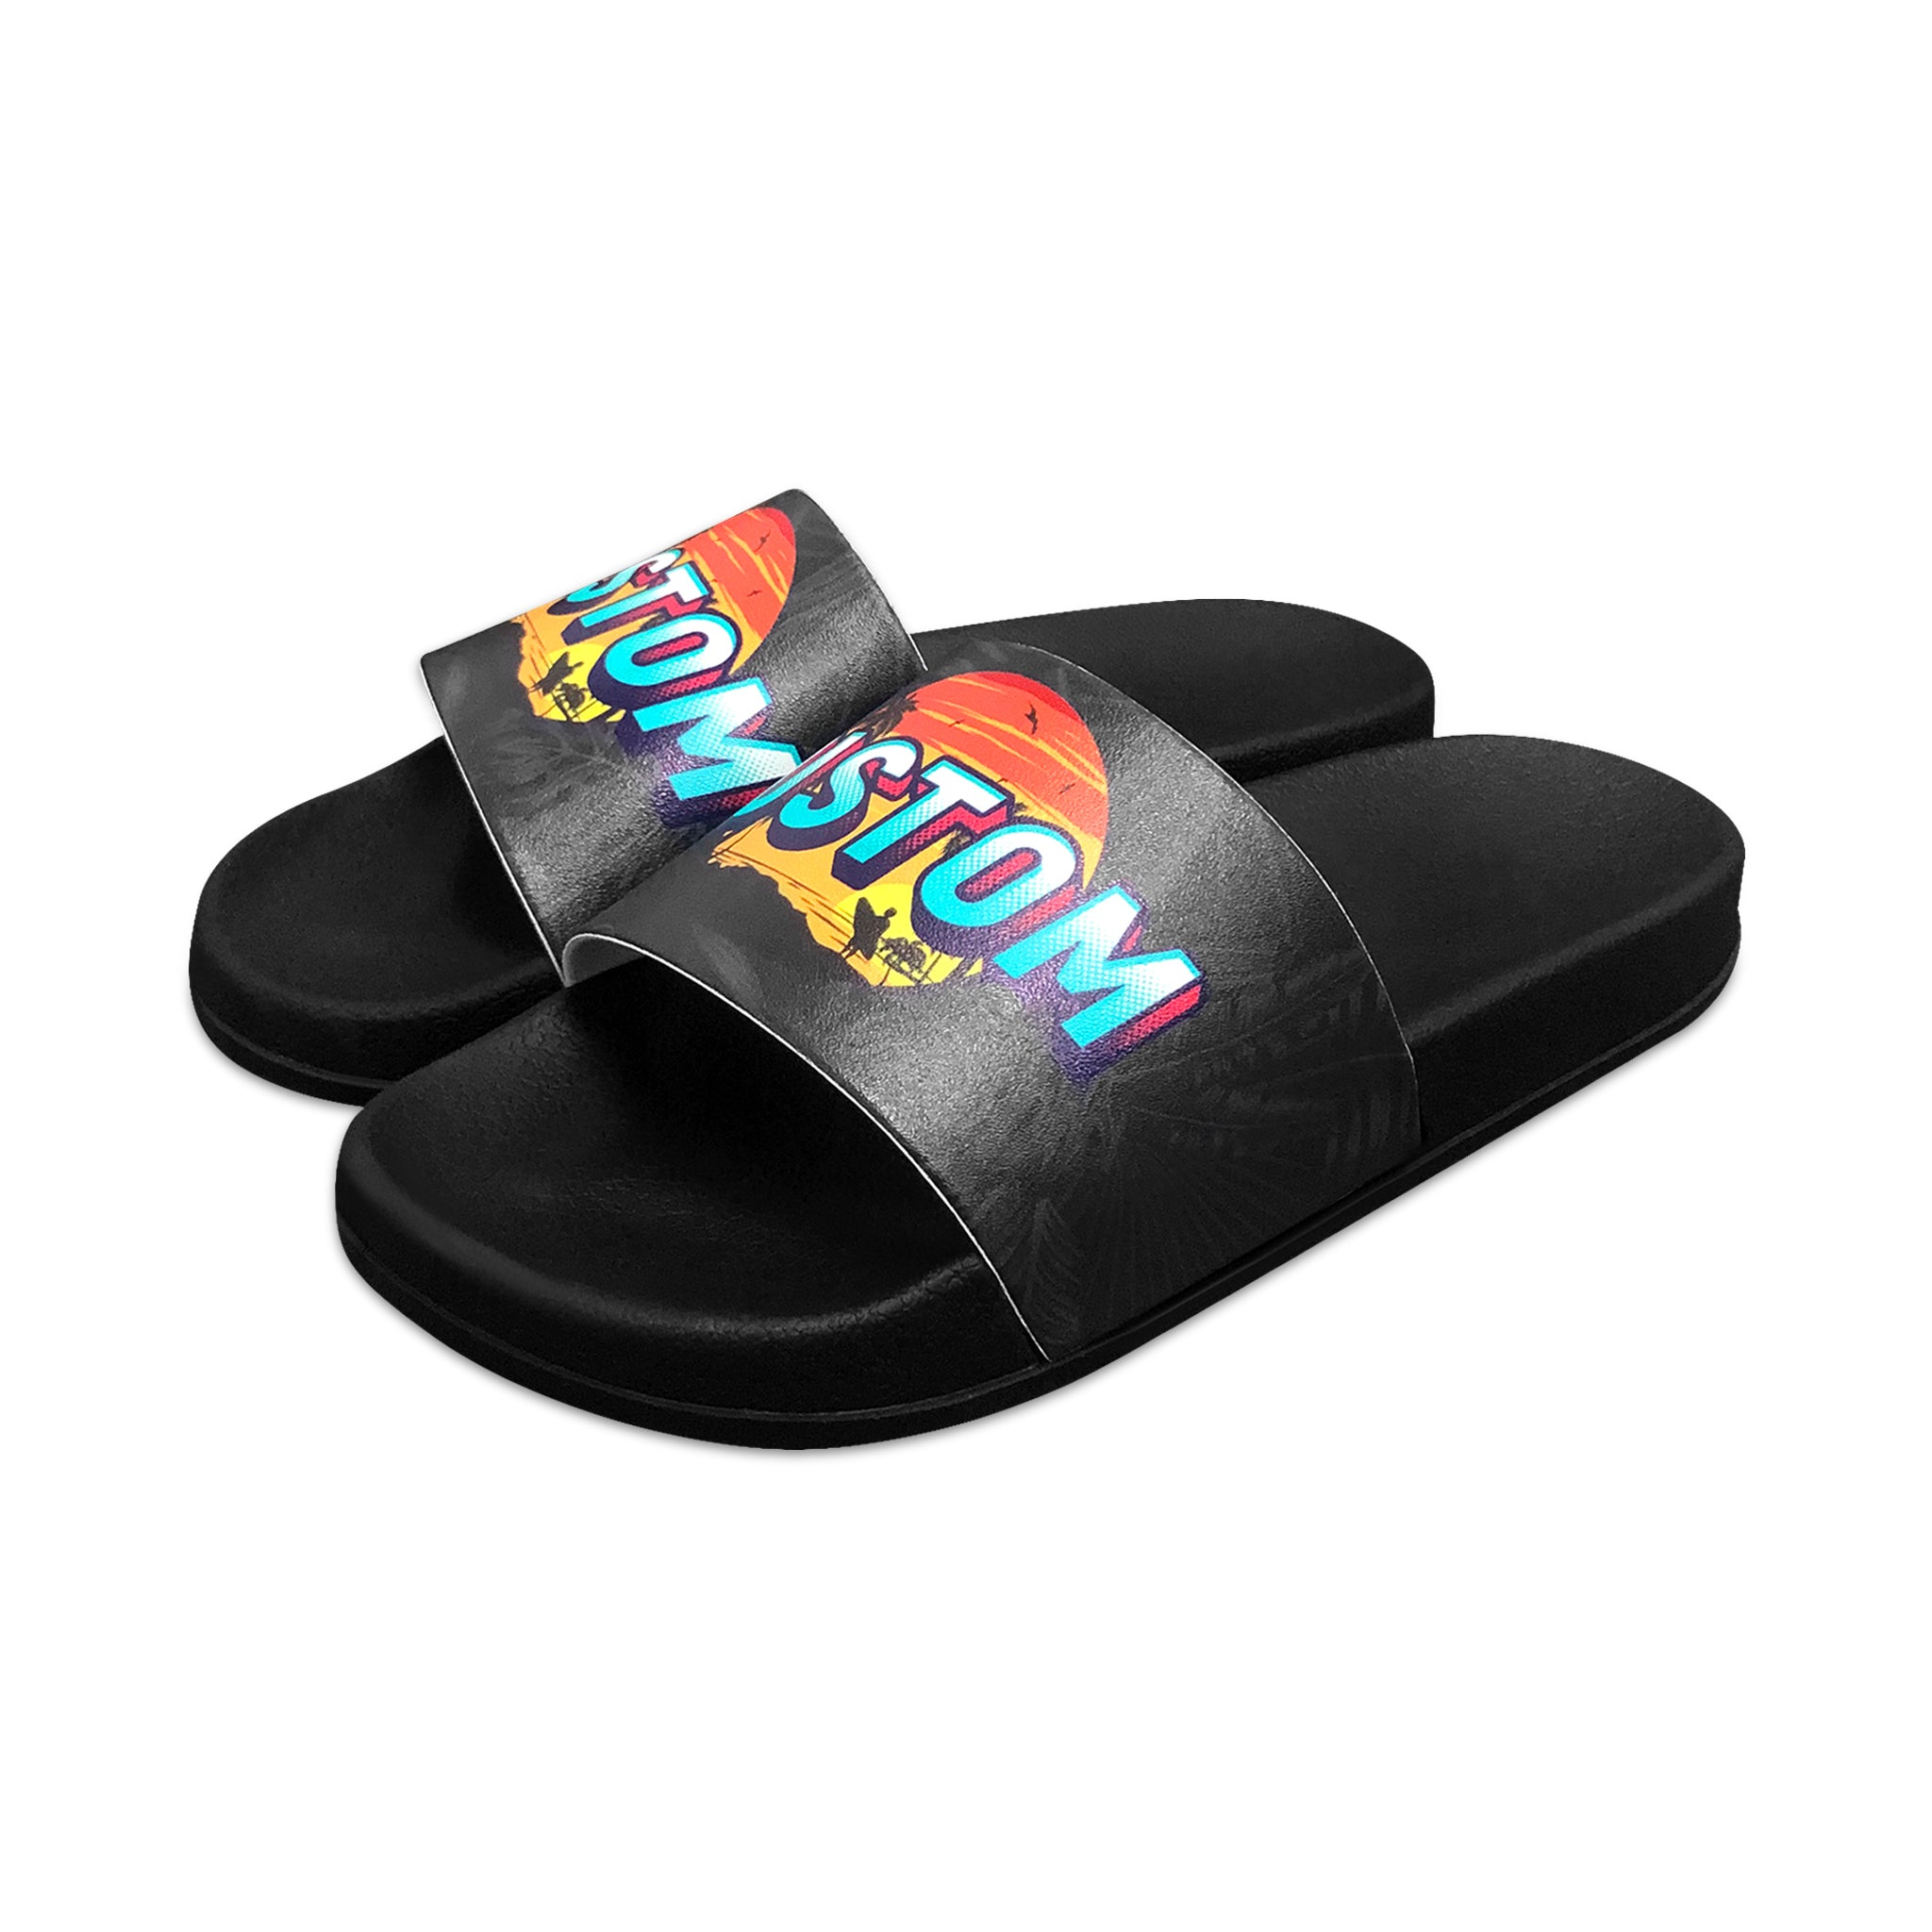 Custom Slides